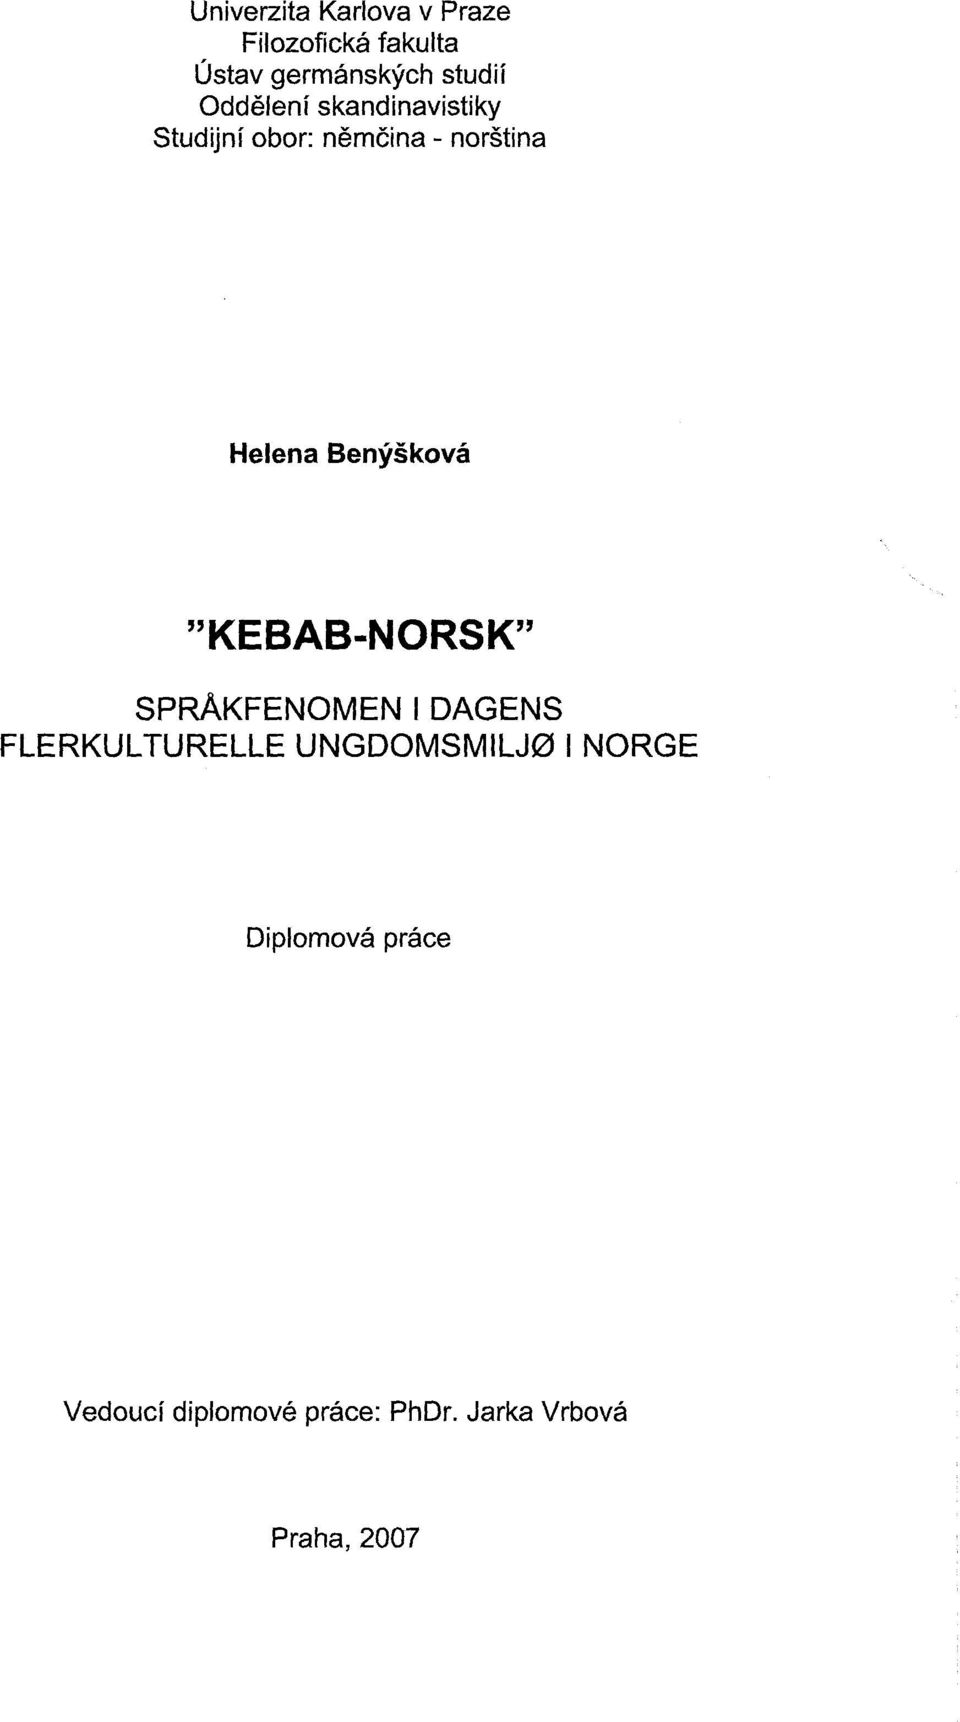 Benyskovå "KEBAB-NORSK" SpRAKFENOMENIDAGENS FLERKULTURELLE UNGDOMSMILJØ